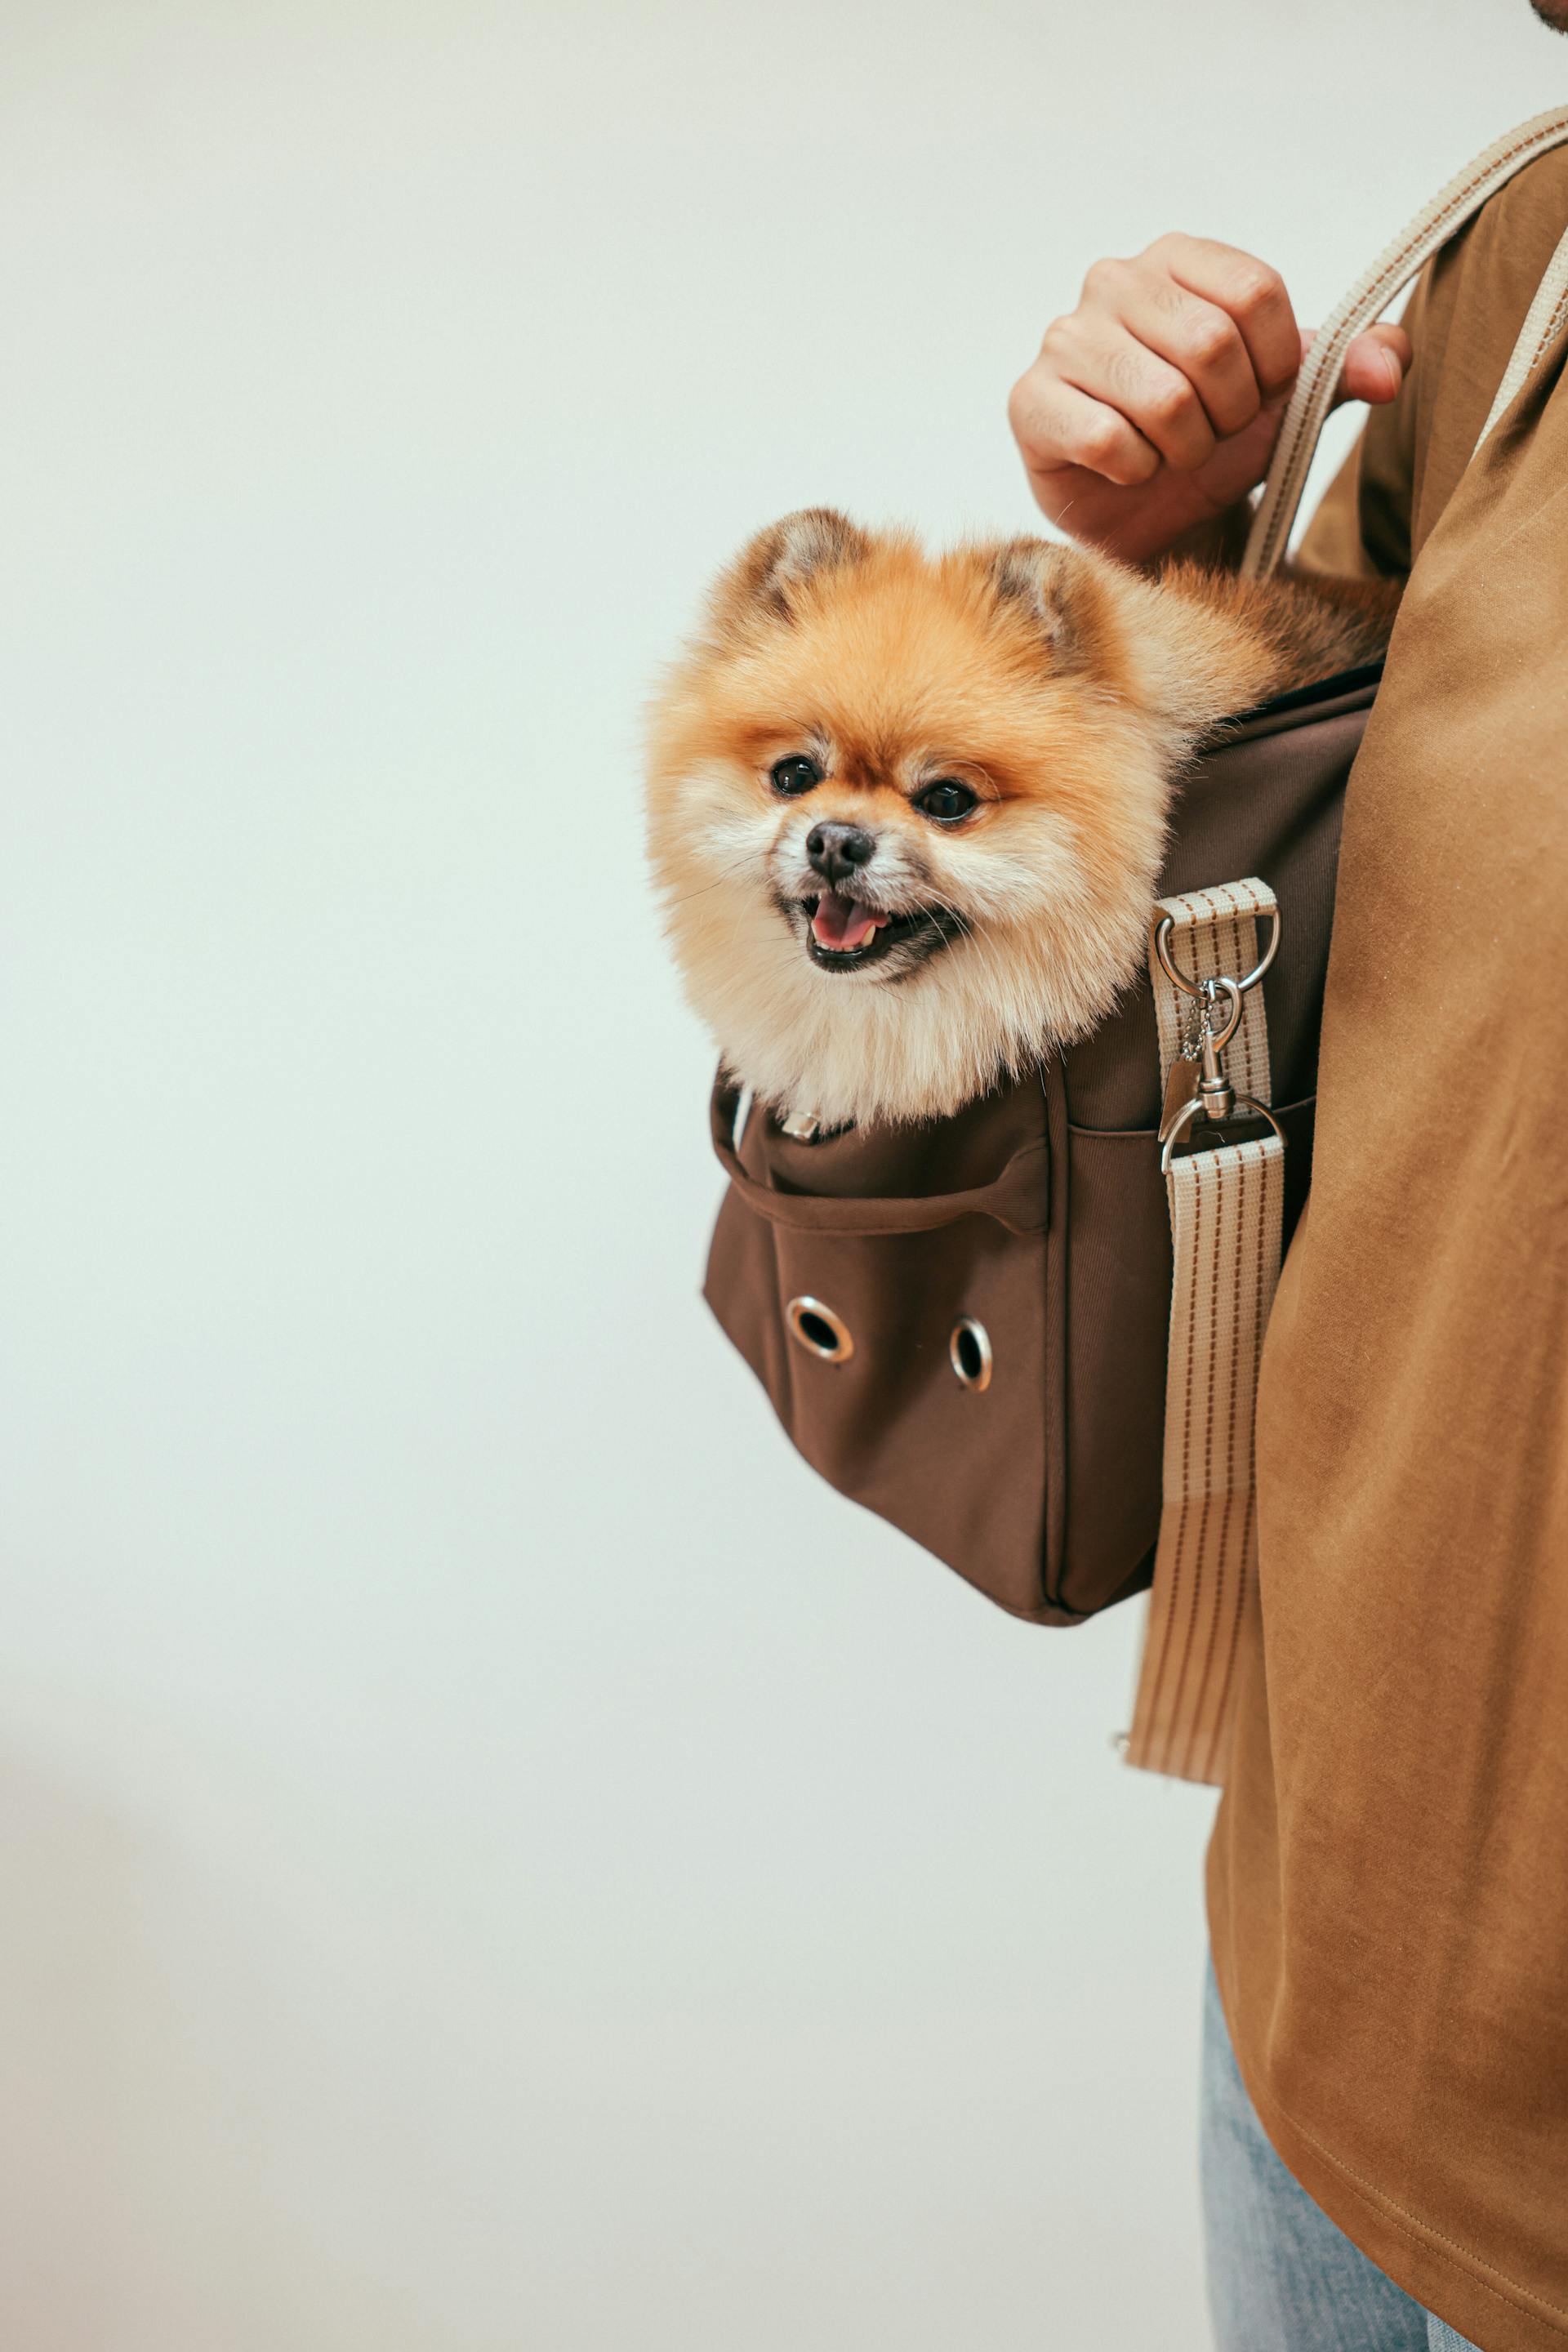 Une personne transportant un chien dans un sac | Source : Pexels